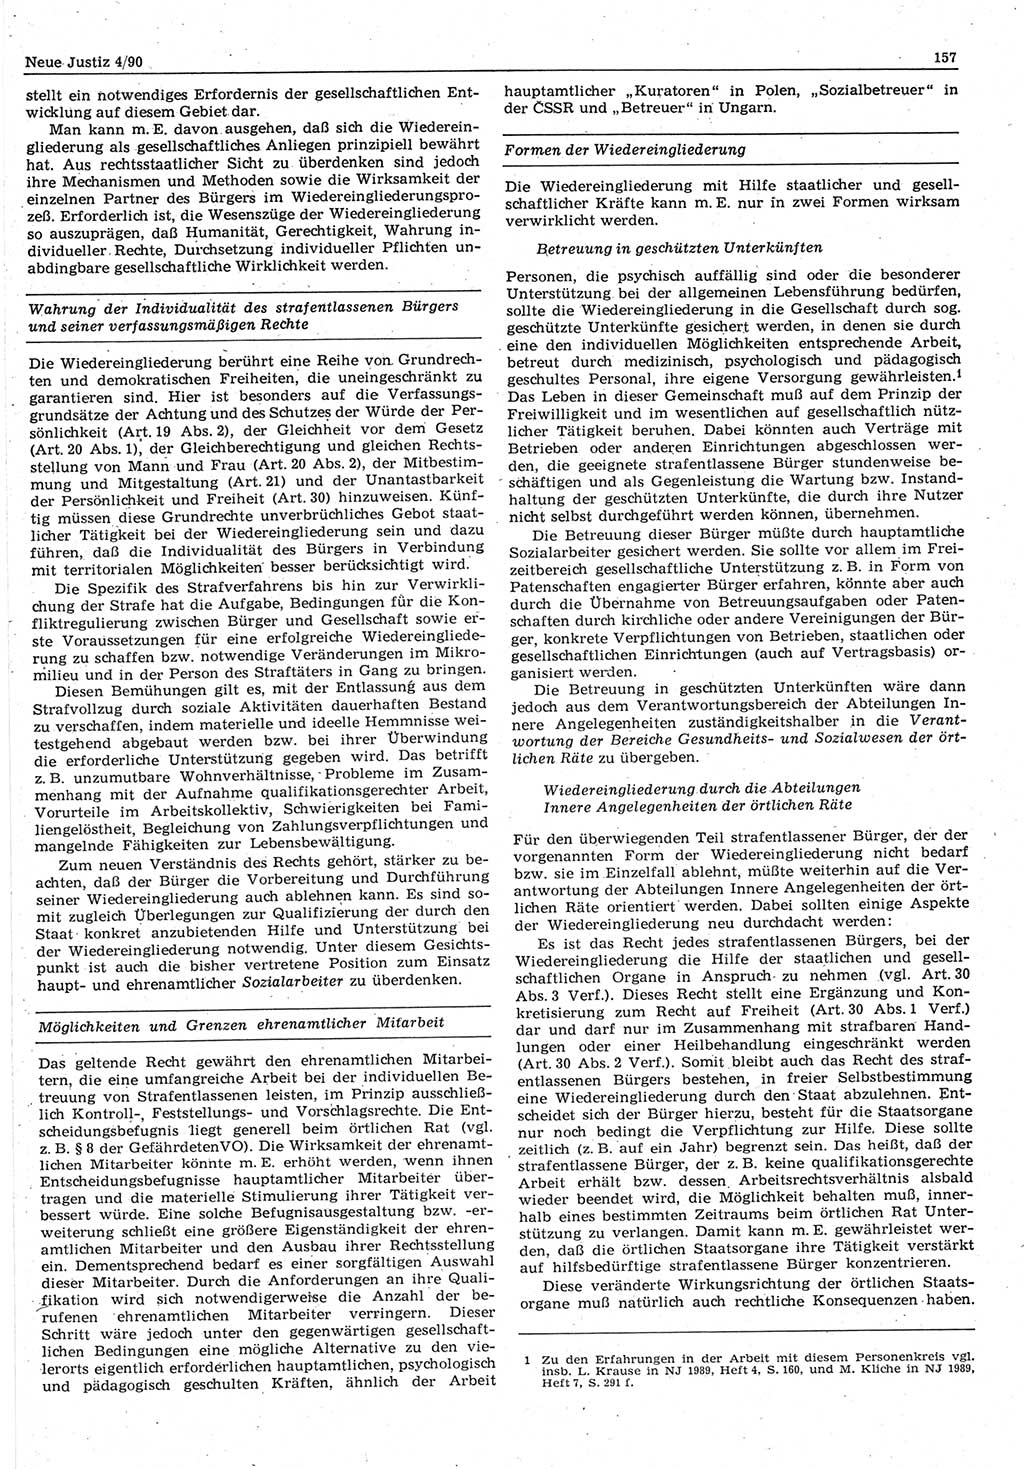 Neue Justiz (NJ), Zeitschrift für Rechtsetzung und Rechtsanwendung [Deutsche Demokratische Republik (DDR)], 44. Jahrgang 1990, Seite 157 (NJ DDR 1990, S. 157)